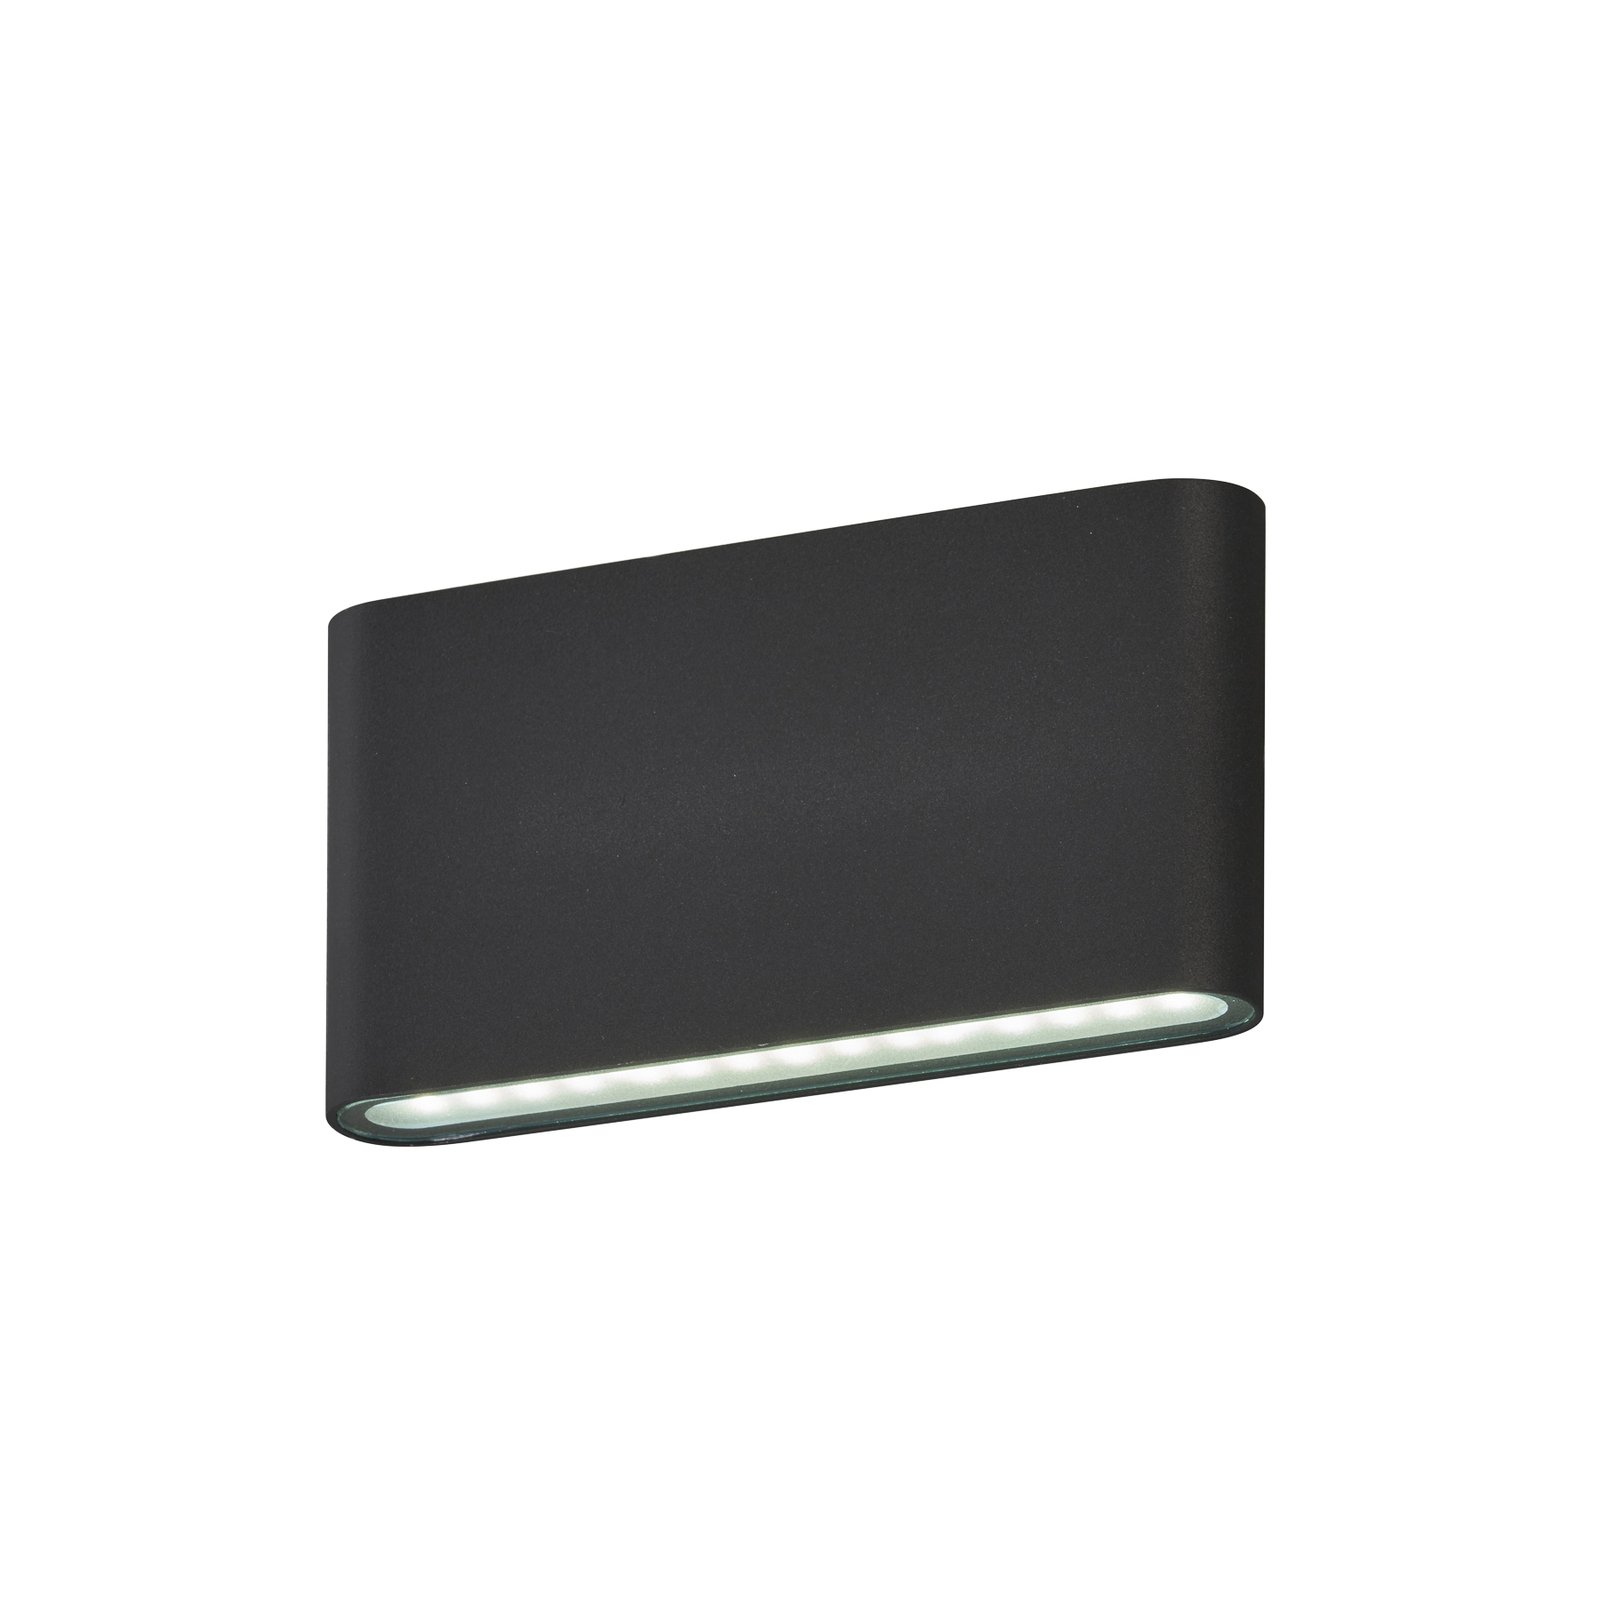 Kinkiet zewnętrzny LED Scone, czarny, szerokość 17,5 cm, 2-punktowa.